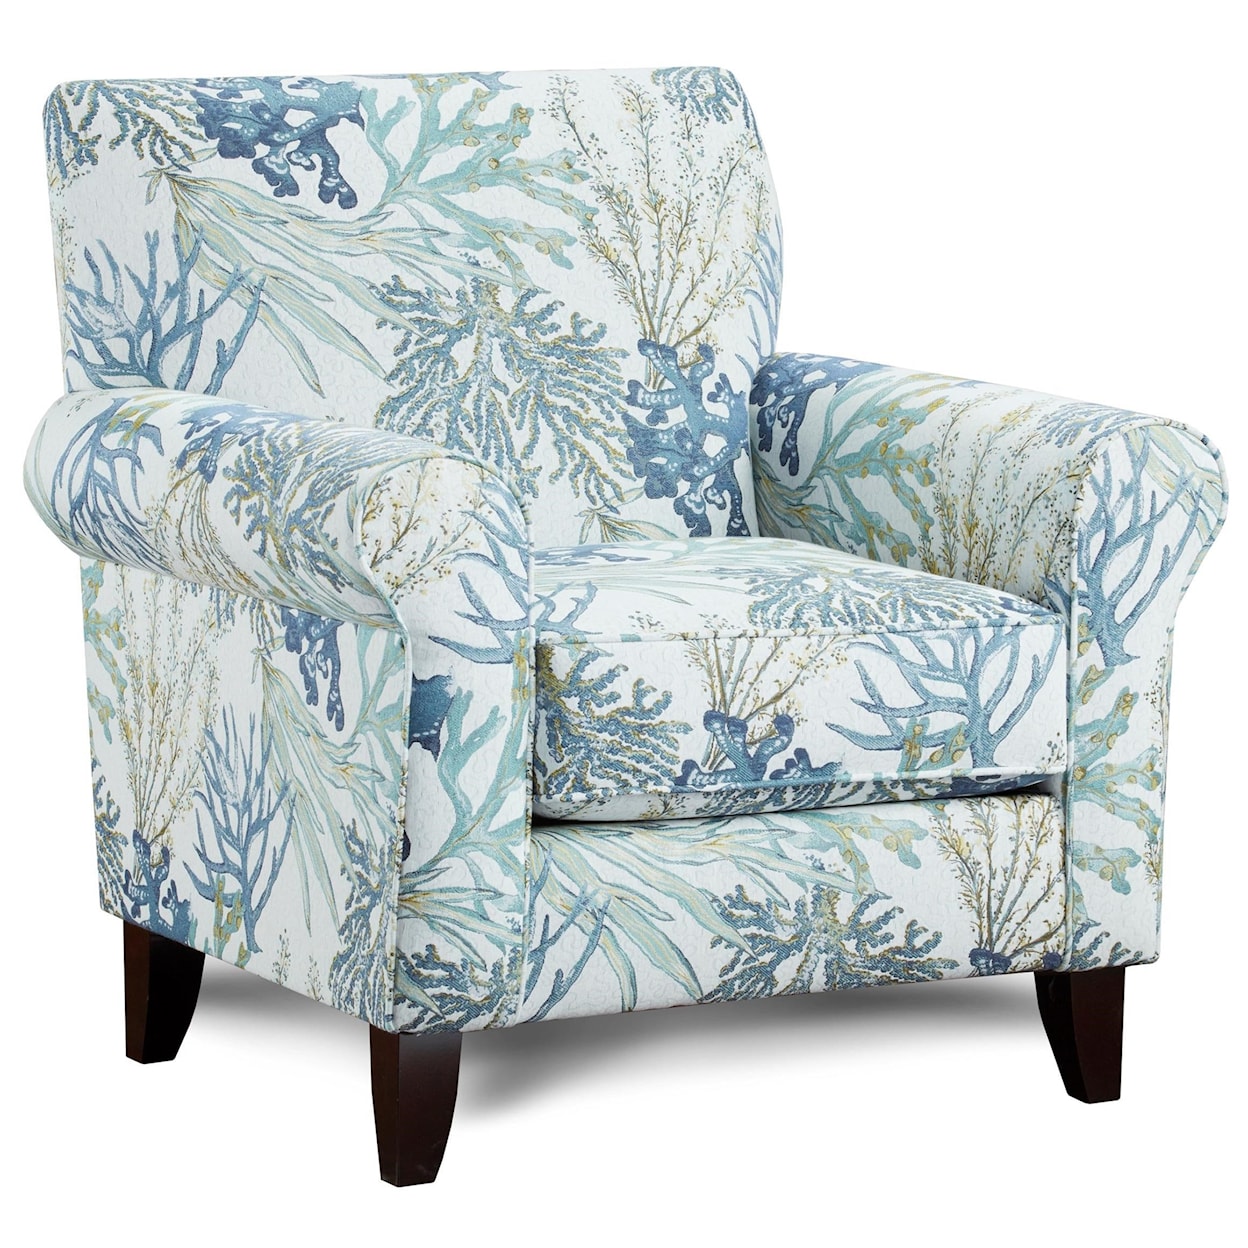 Fusion Furniture 1140 GRANDE GLACIER (REVOLUTION) Accent Chair